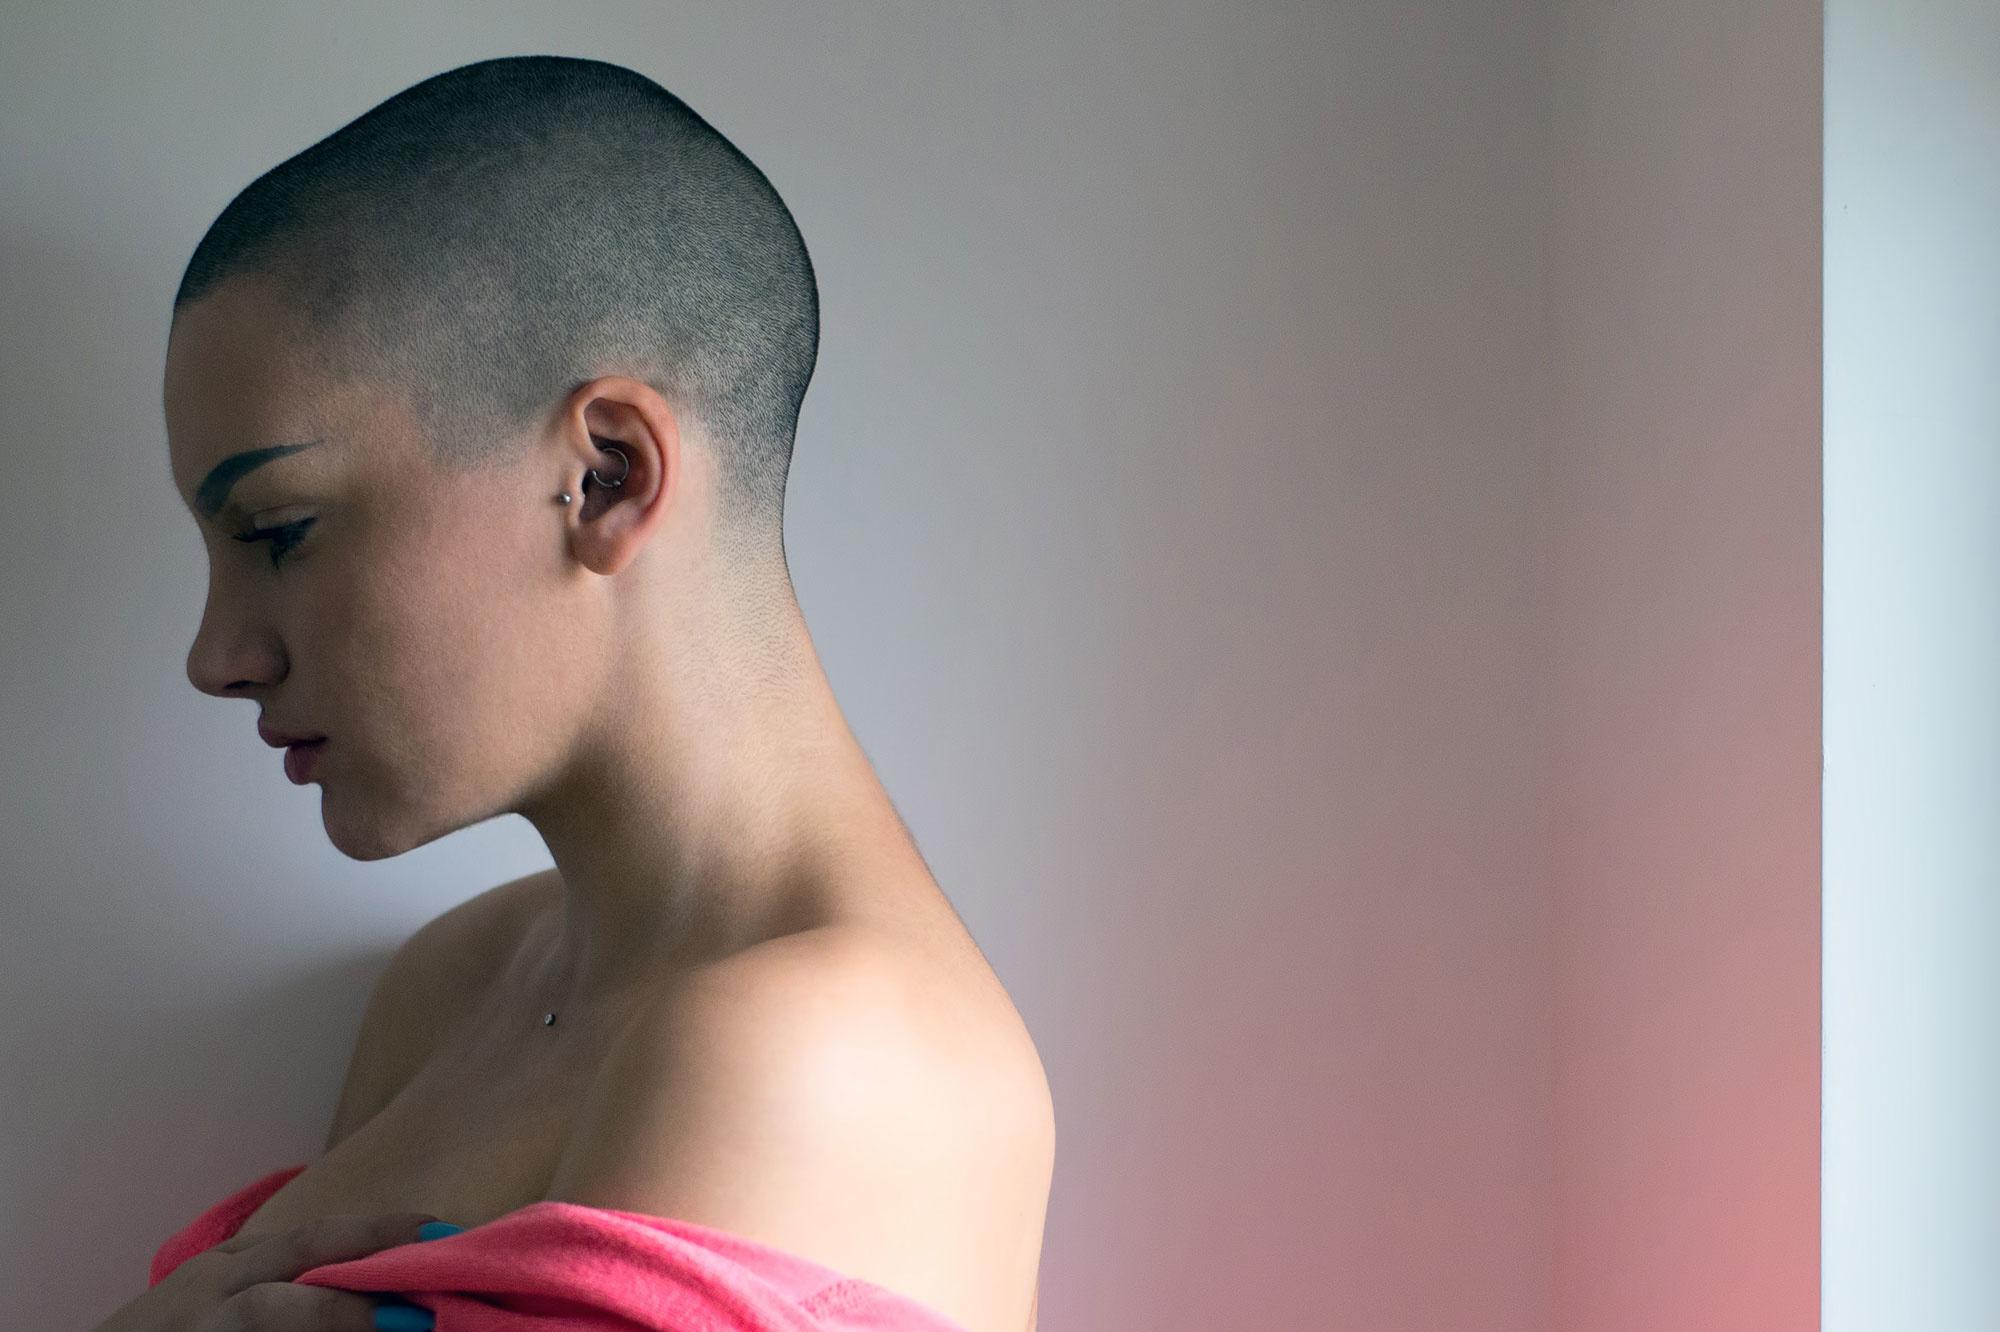 Vijftig Moderniseren Bukken Haarverlies bij chemo: 'Jammer dat pruik beschouwd wordt als luxeproduct'